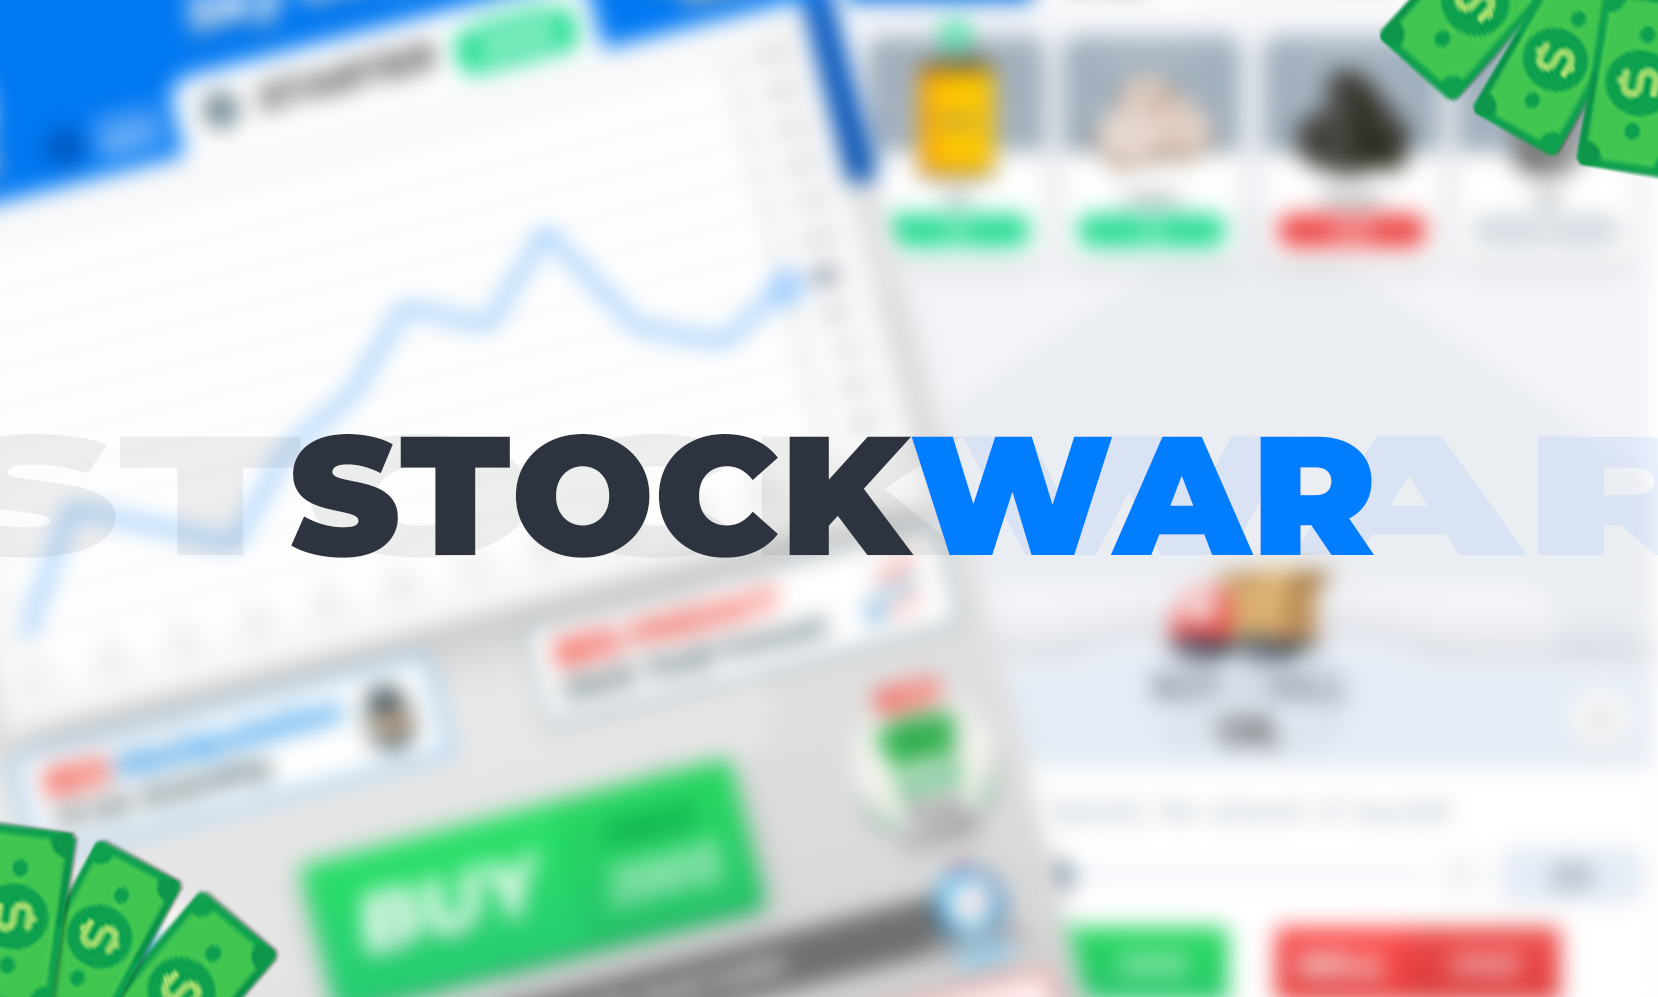 Stock War